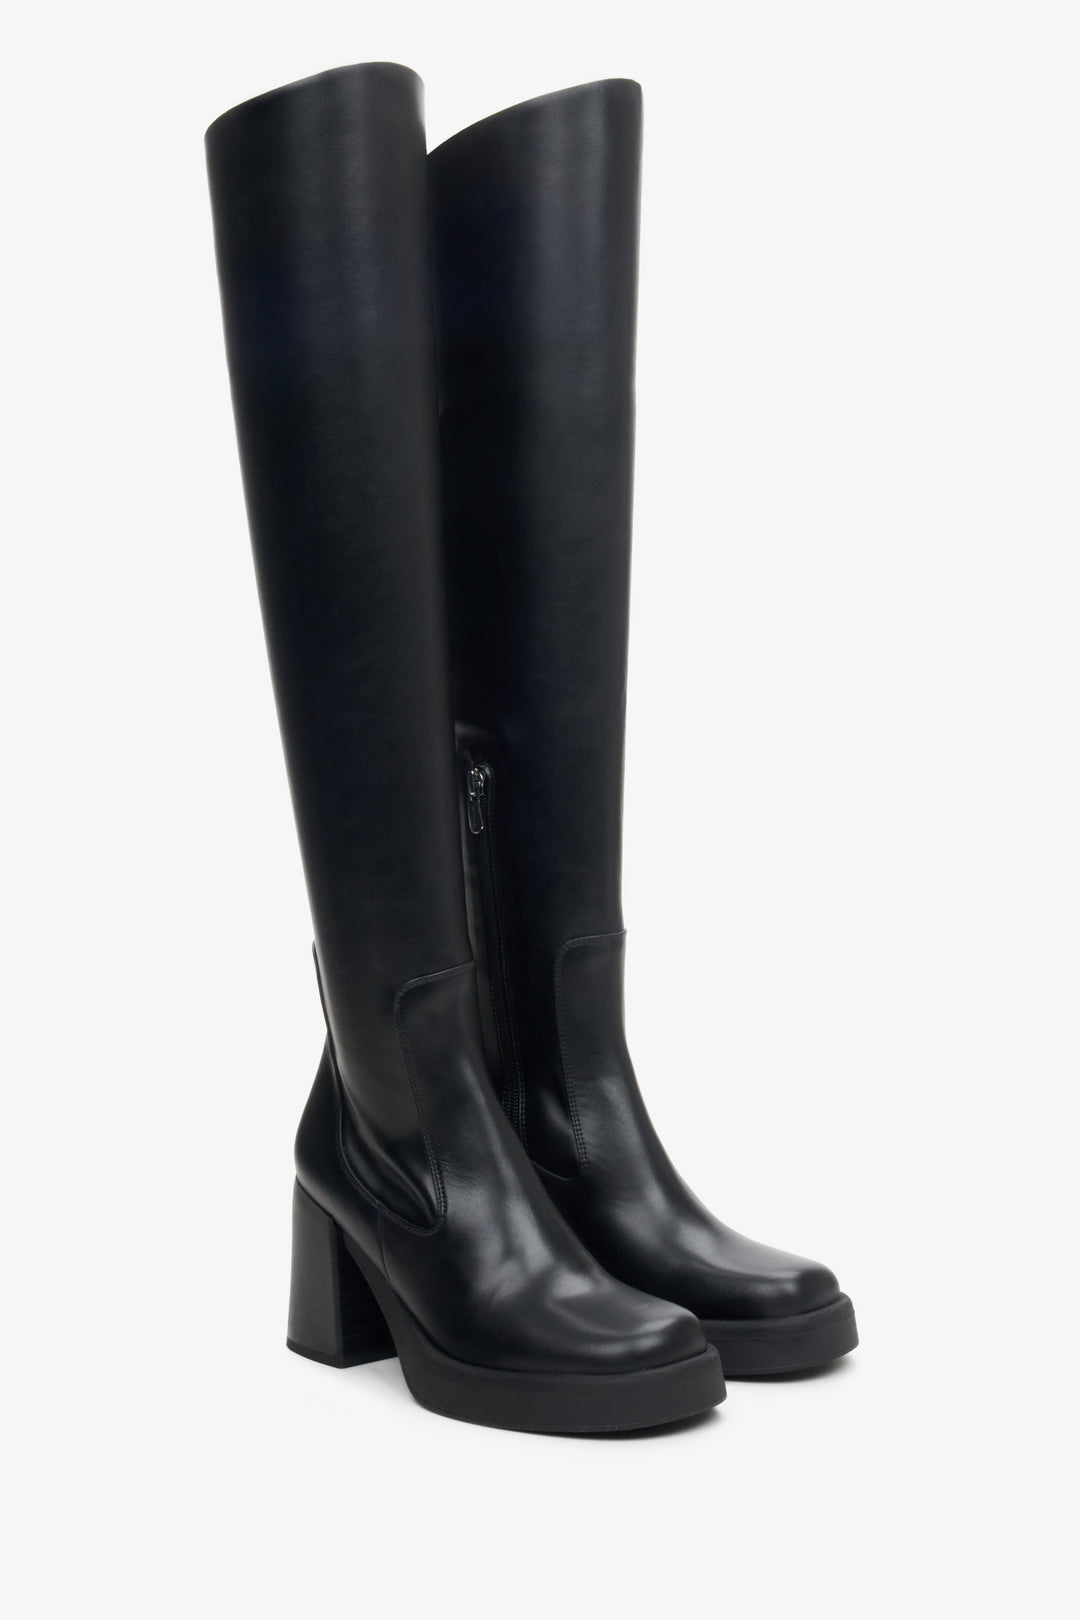 Women's knee-high boots in black Estro.